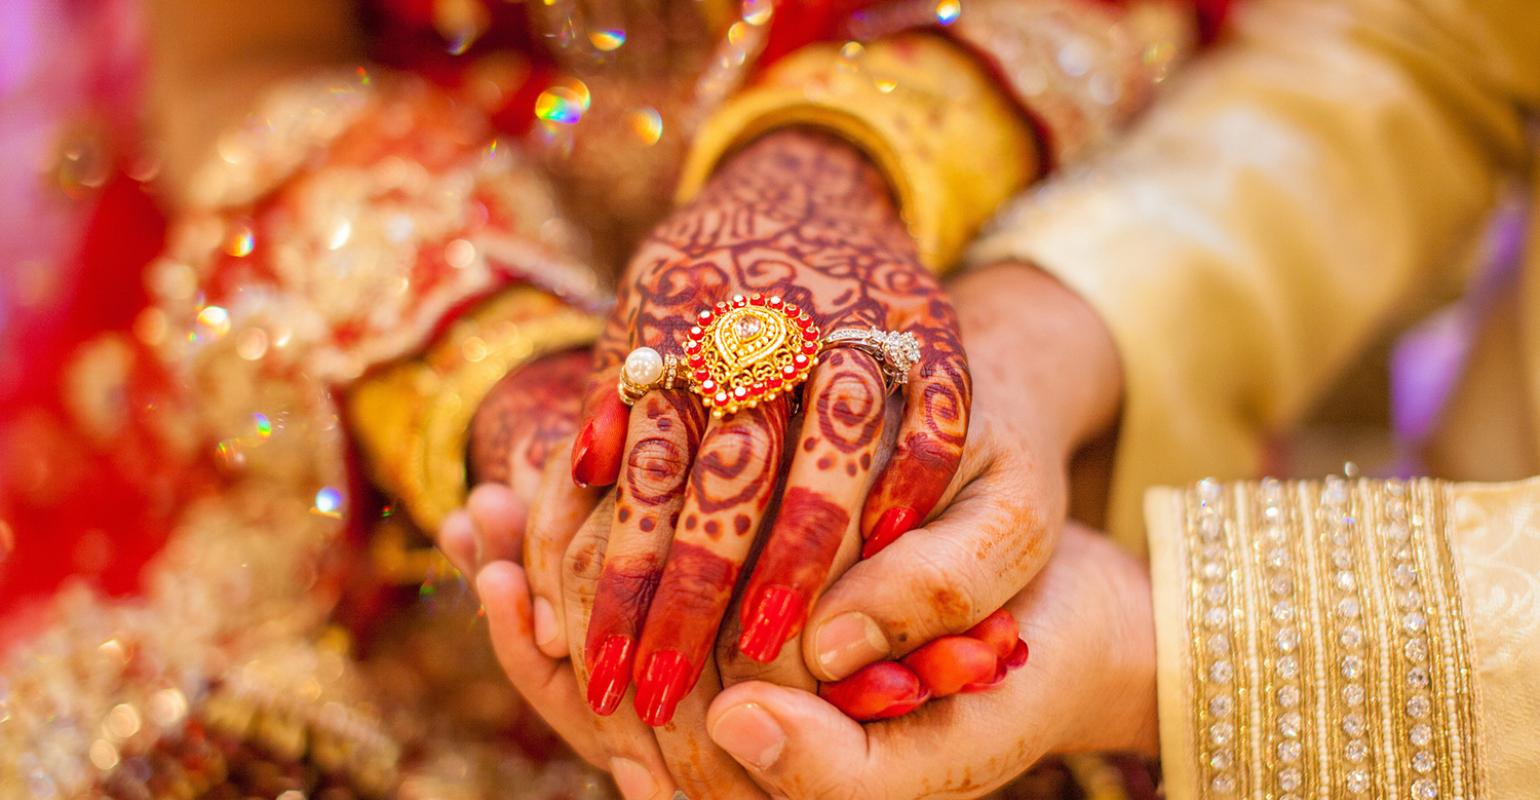 Indian Wedding Hands 2019 0